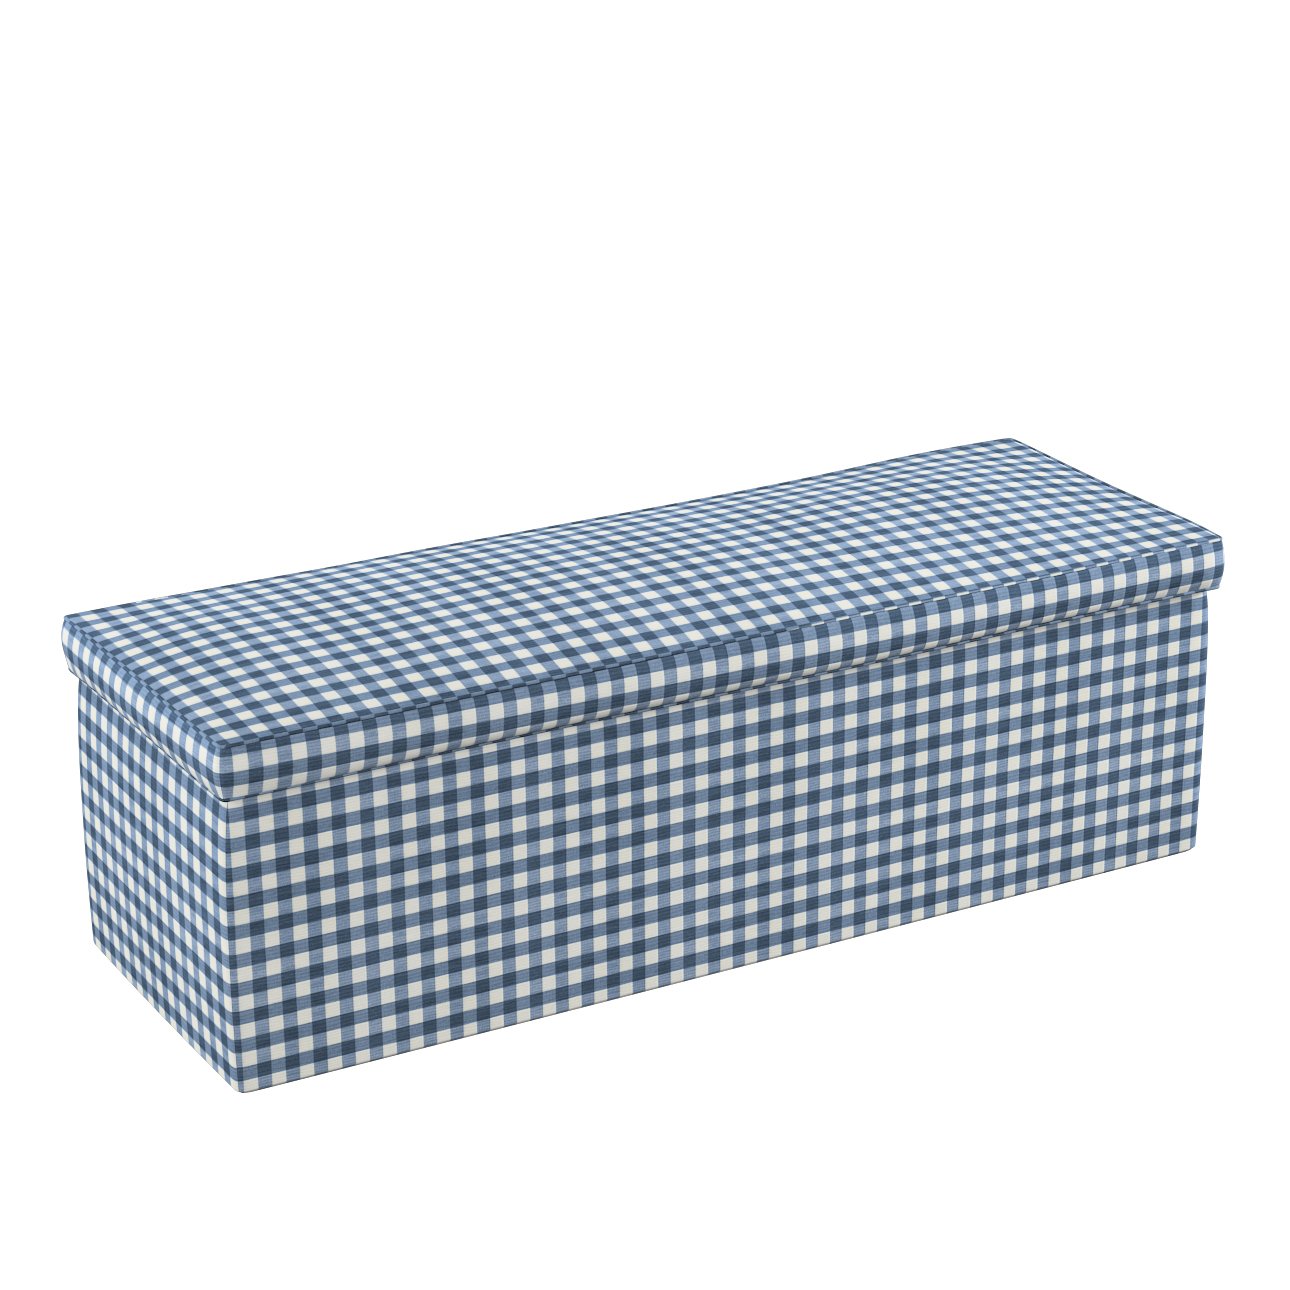 Dekoria Čalouněná skříň, tmavě modrá - bílá střední kostka, 90 x 40 x 40 cm, Quadro, 136-01